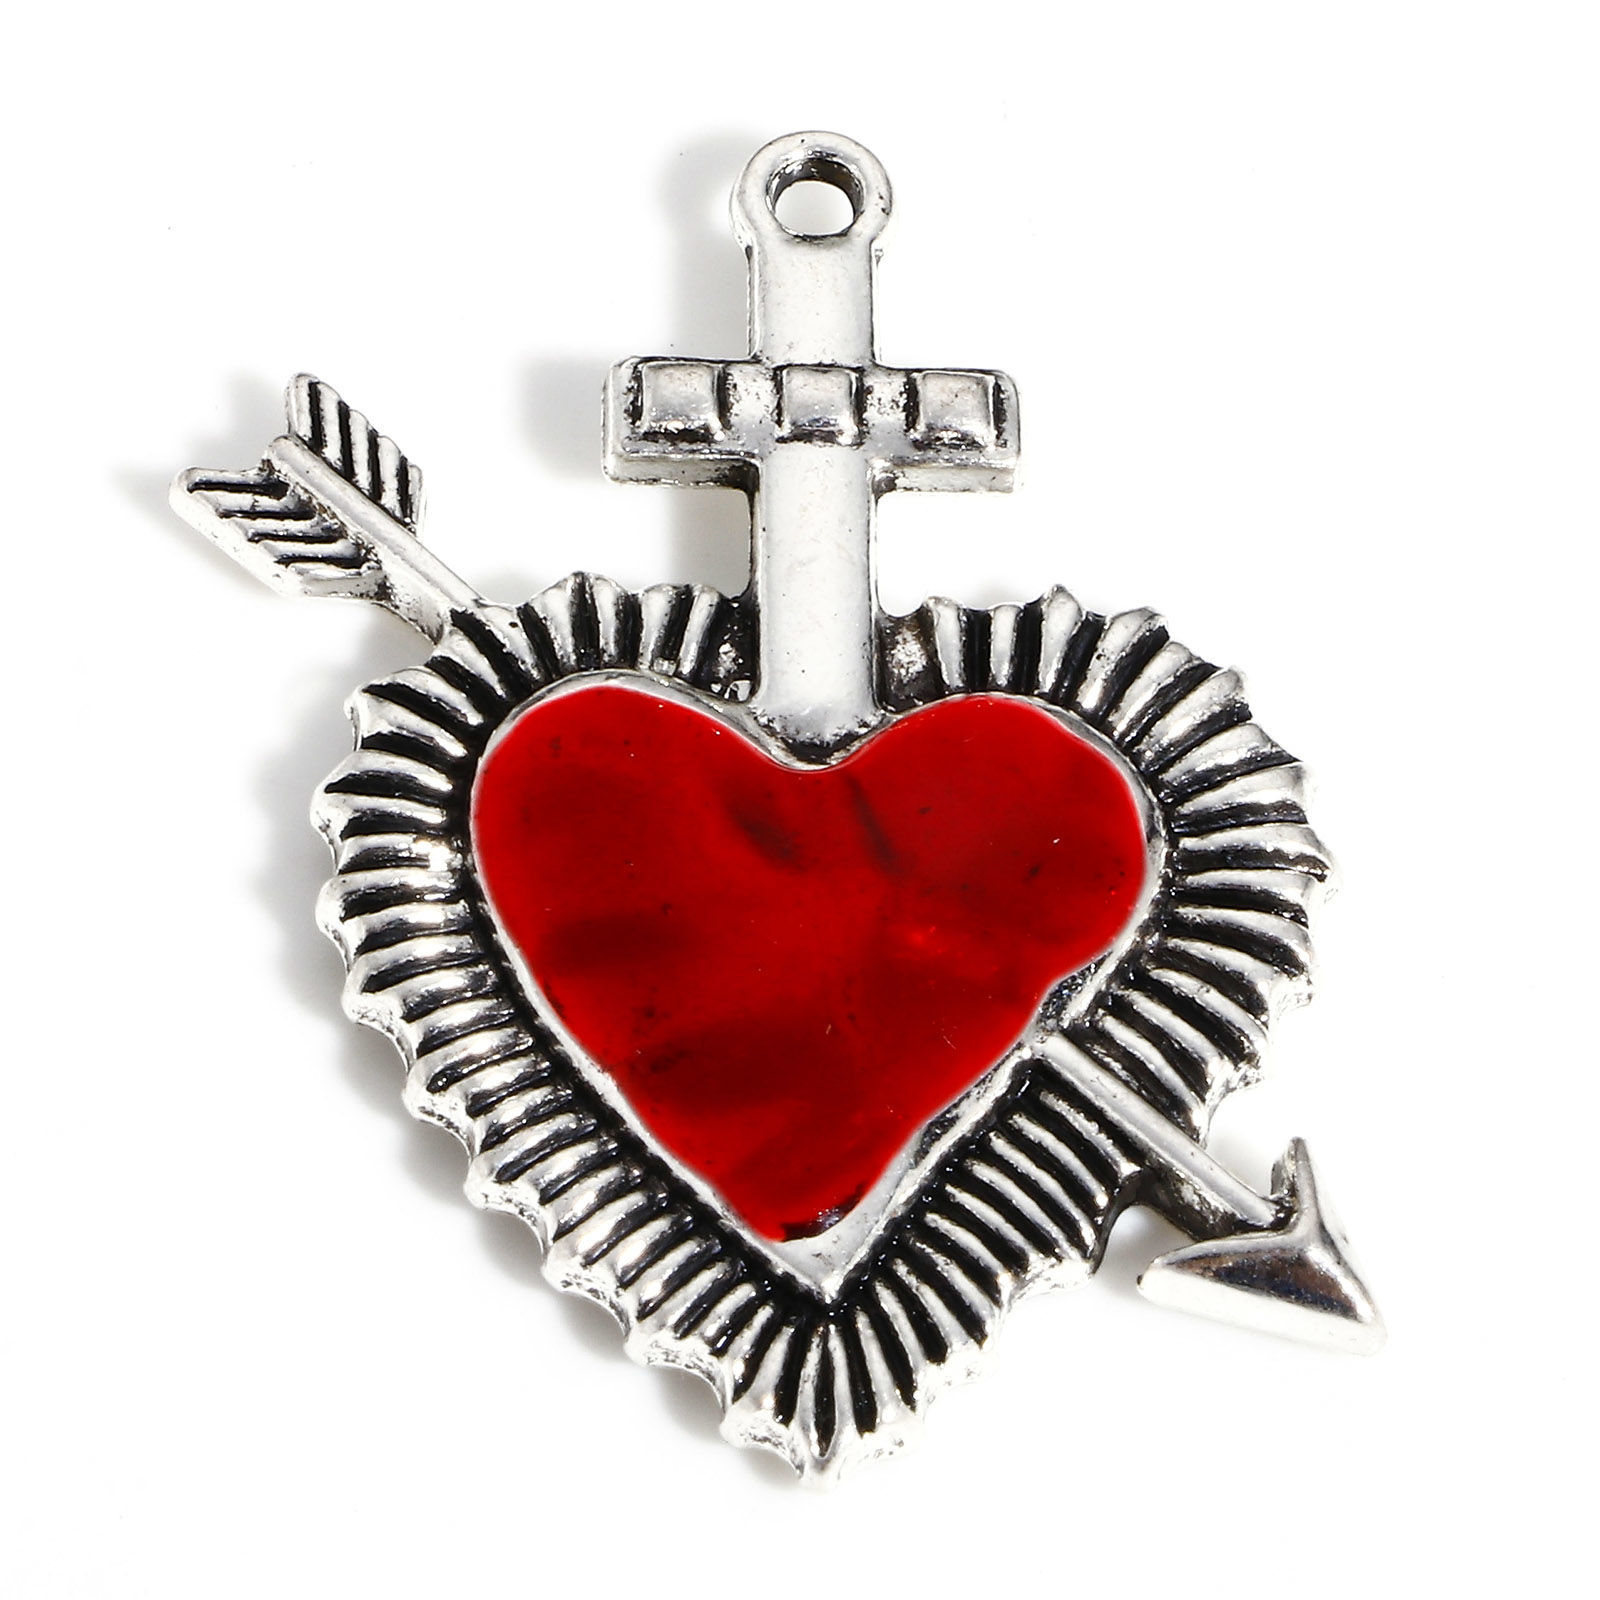 Picture of Zinc Based Alloy Religious Pendants Antique Silver Color Red Ex Voto Heart Arrowhead Enamel 3.9cm x 3.1cm, 5 PCs